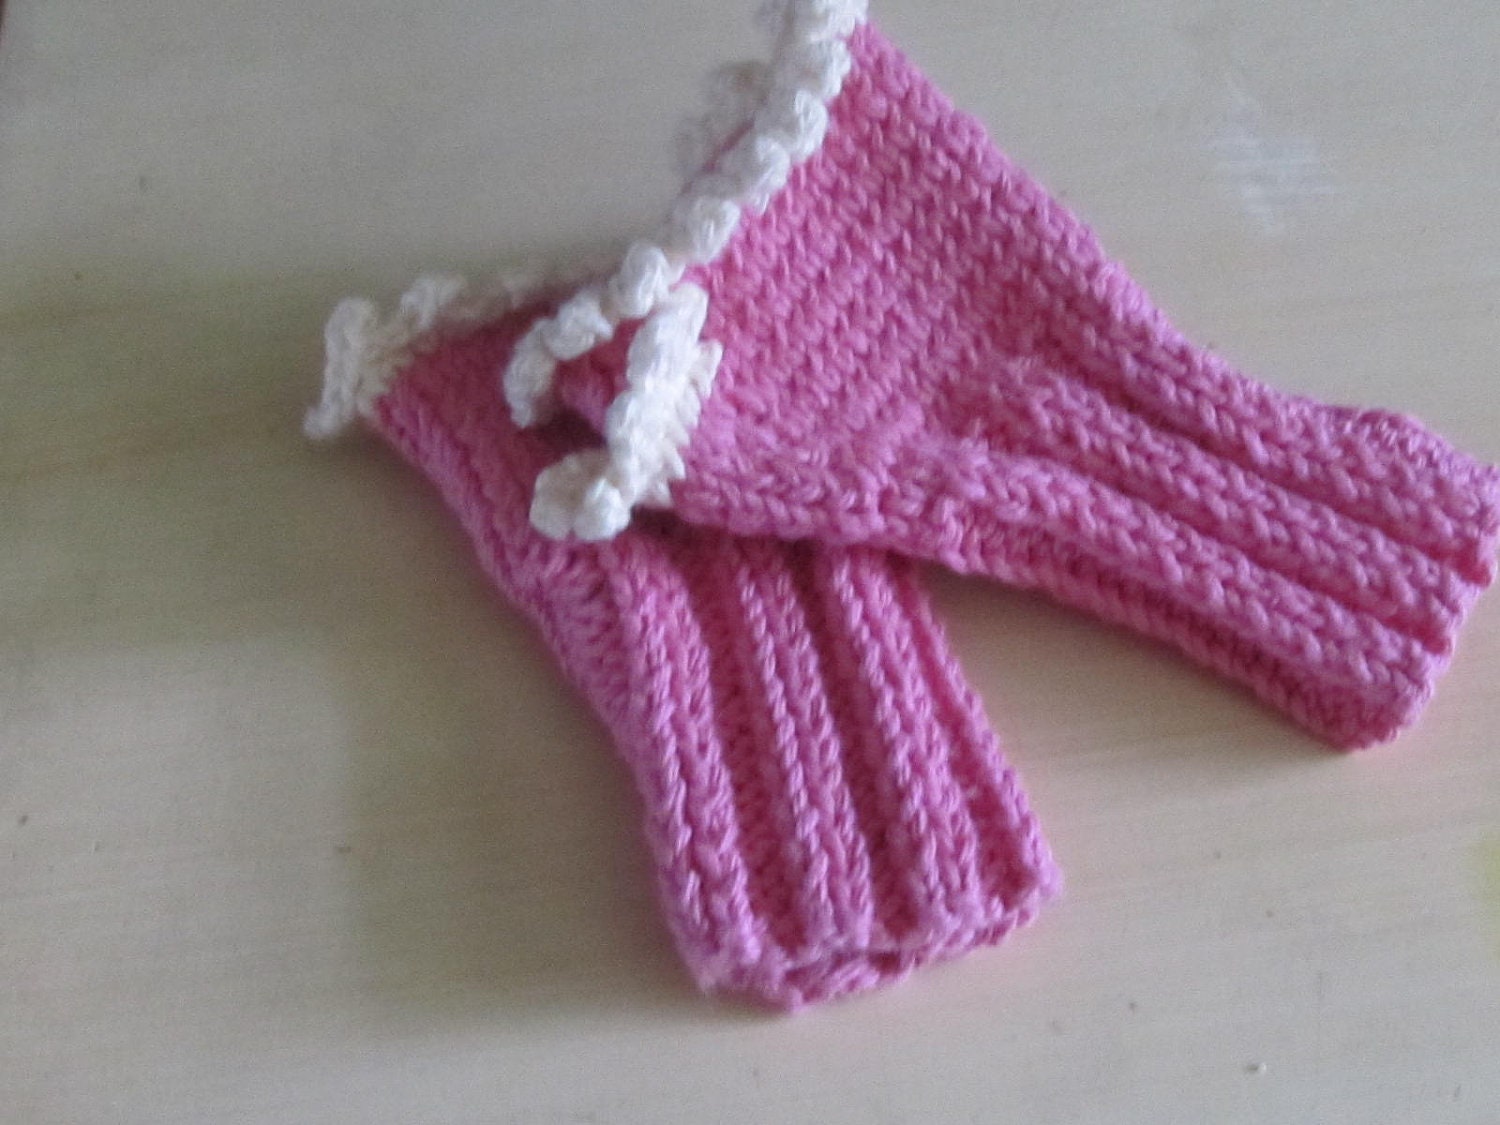 Fingerless Knitted Cotton Gloves - Girls sizes 4-6